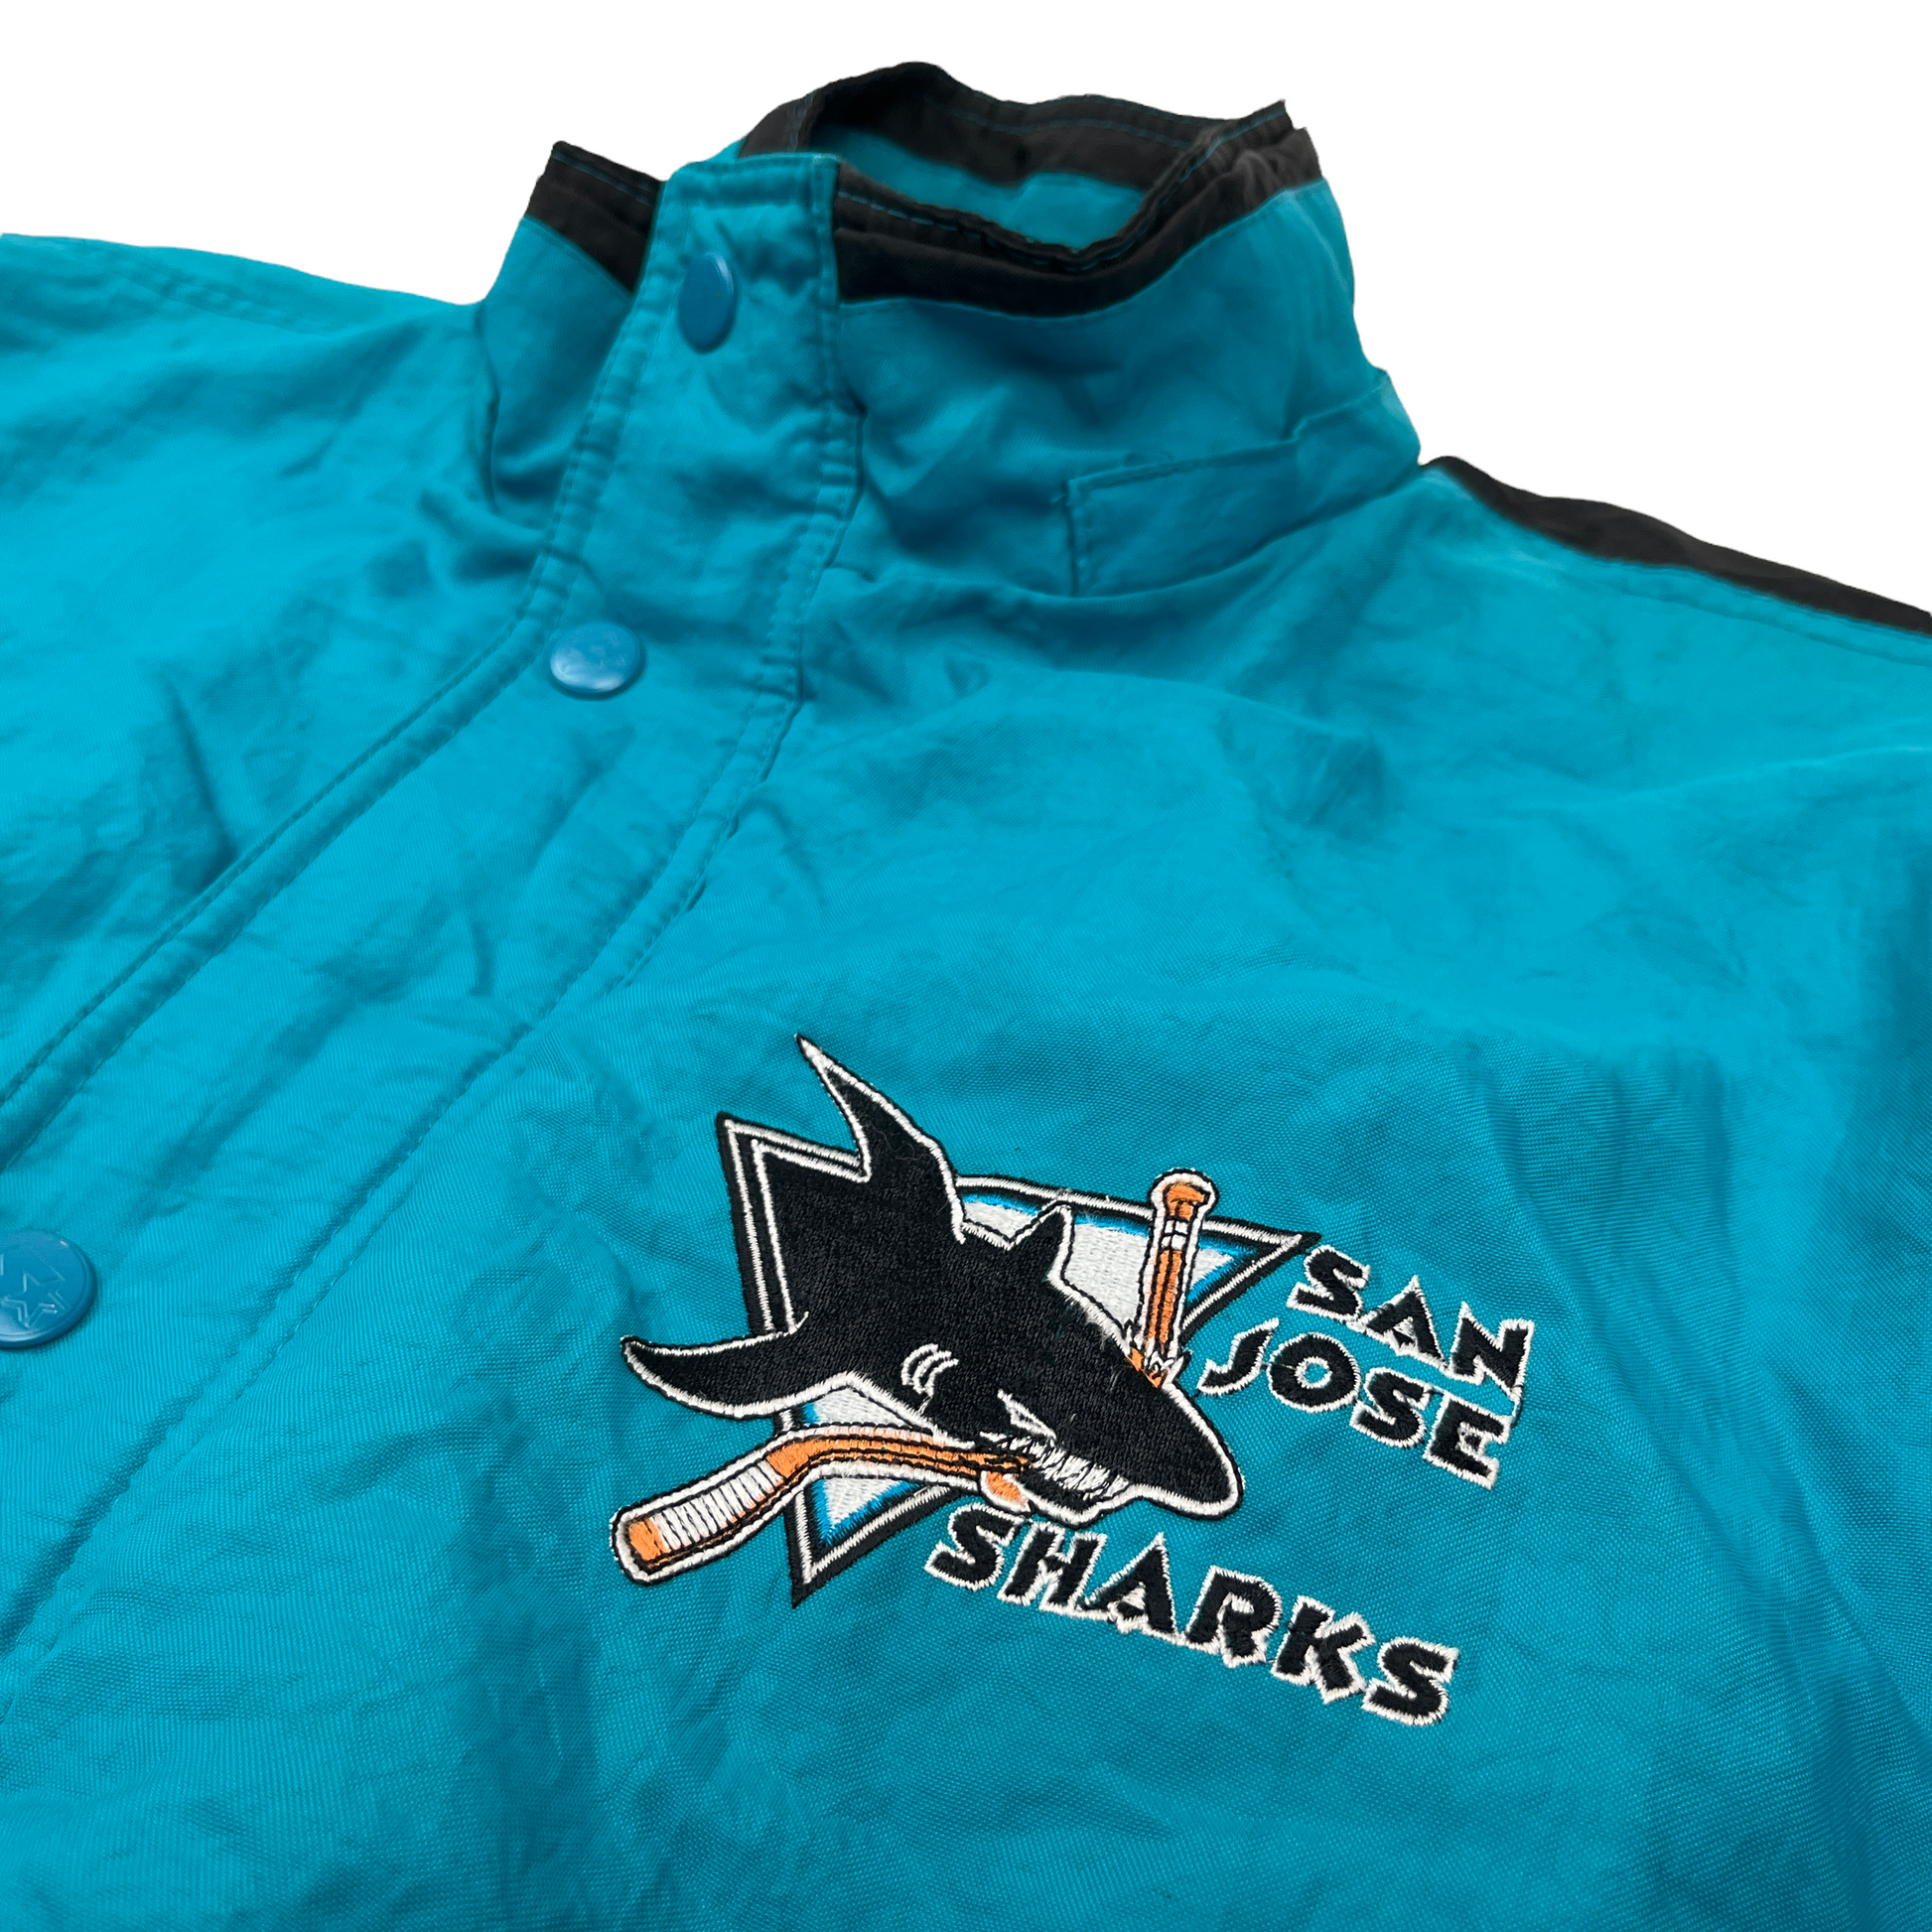 San Jose Sharks Starter Jersey – Vintage Strains